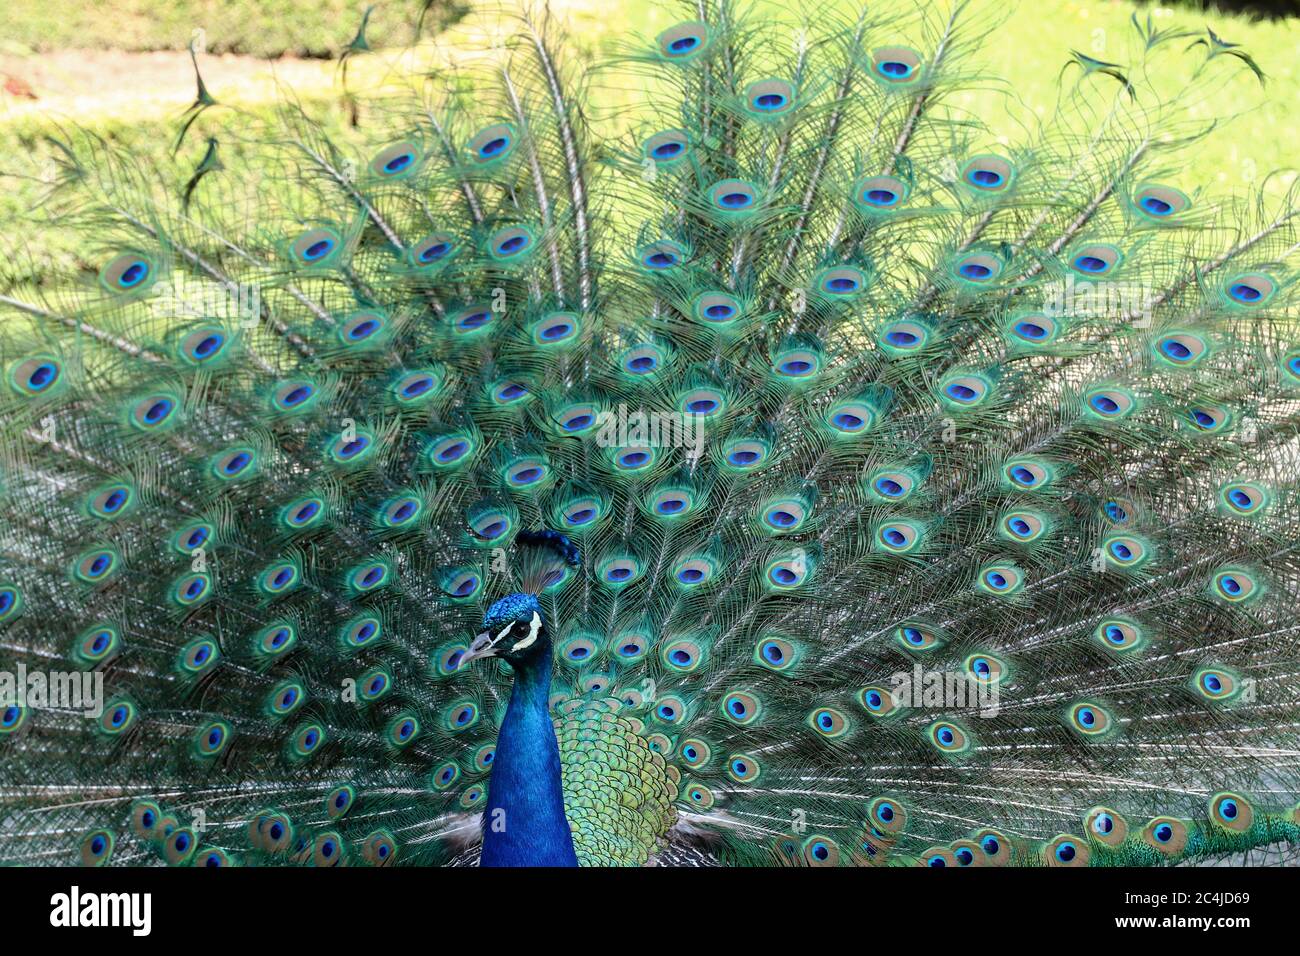 Peacock mostra la sua lunga coda con belle piume con segni simili agli occhi Foto Stock